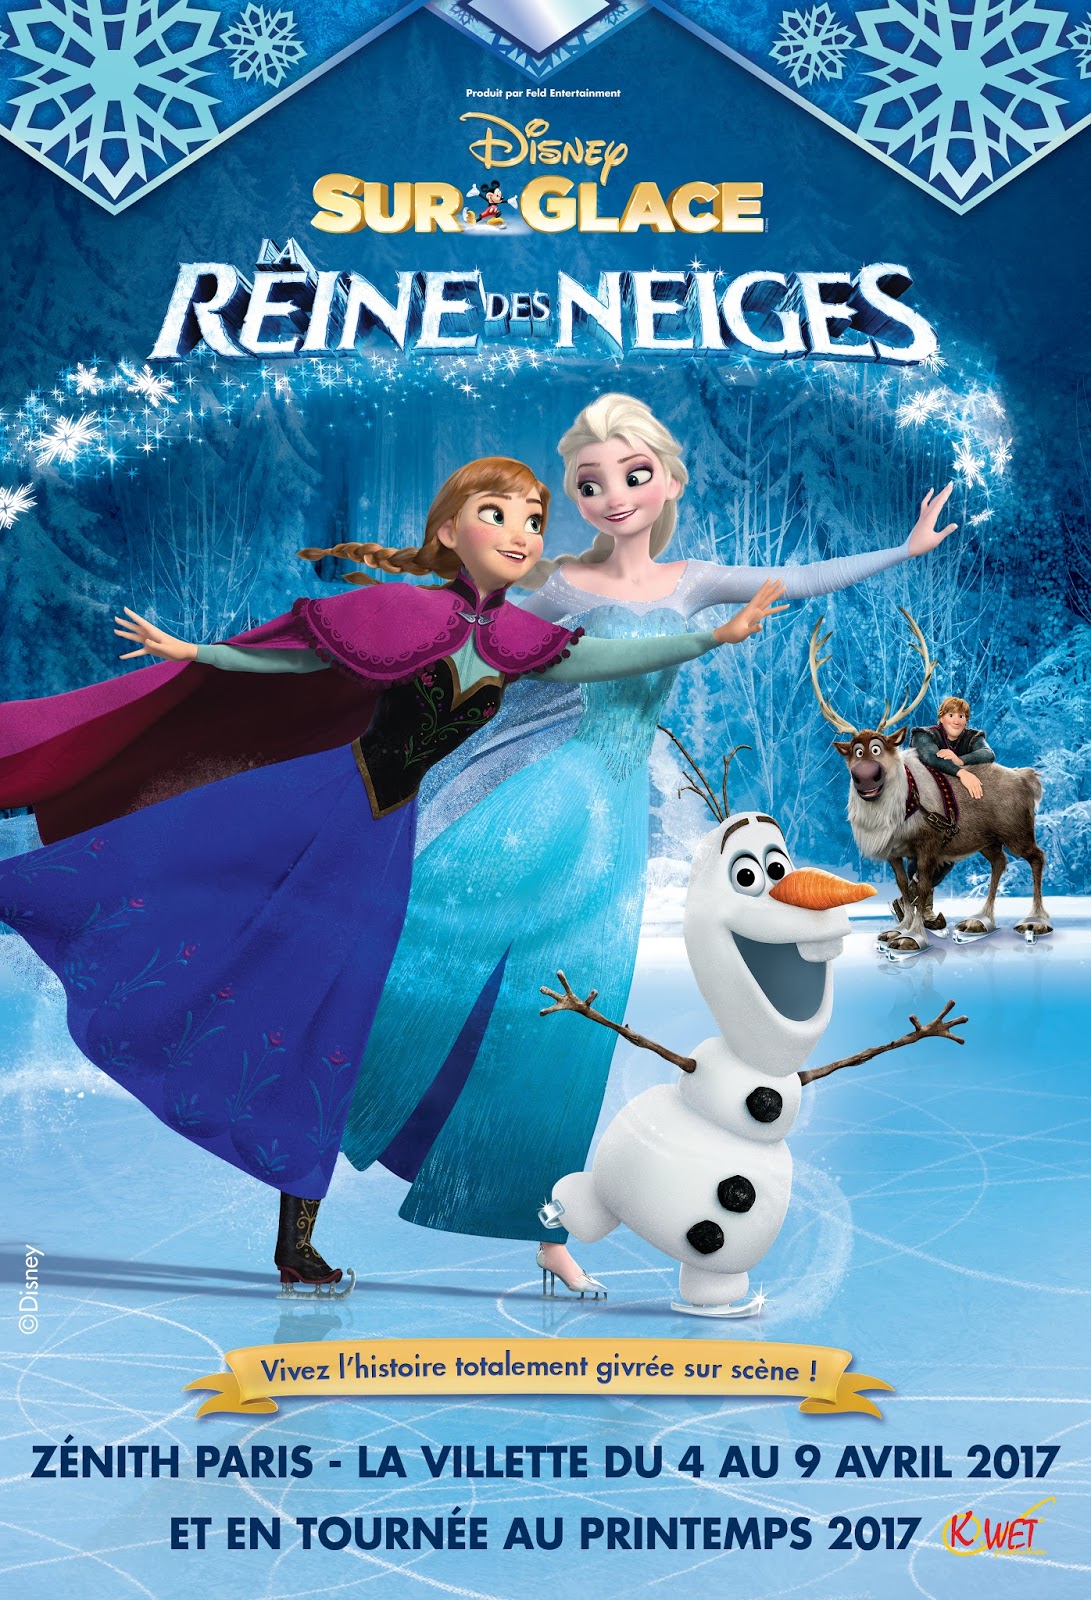  Disney  sur glace la  reine  des neiges  Julesetmoa